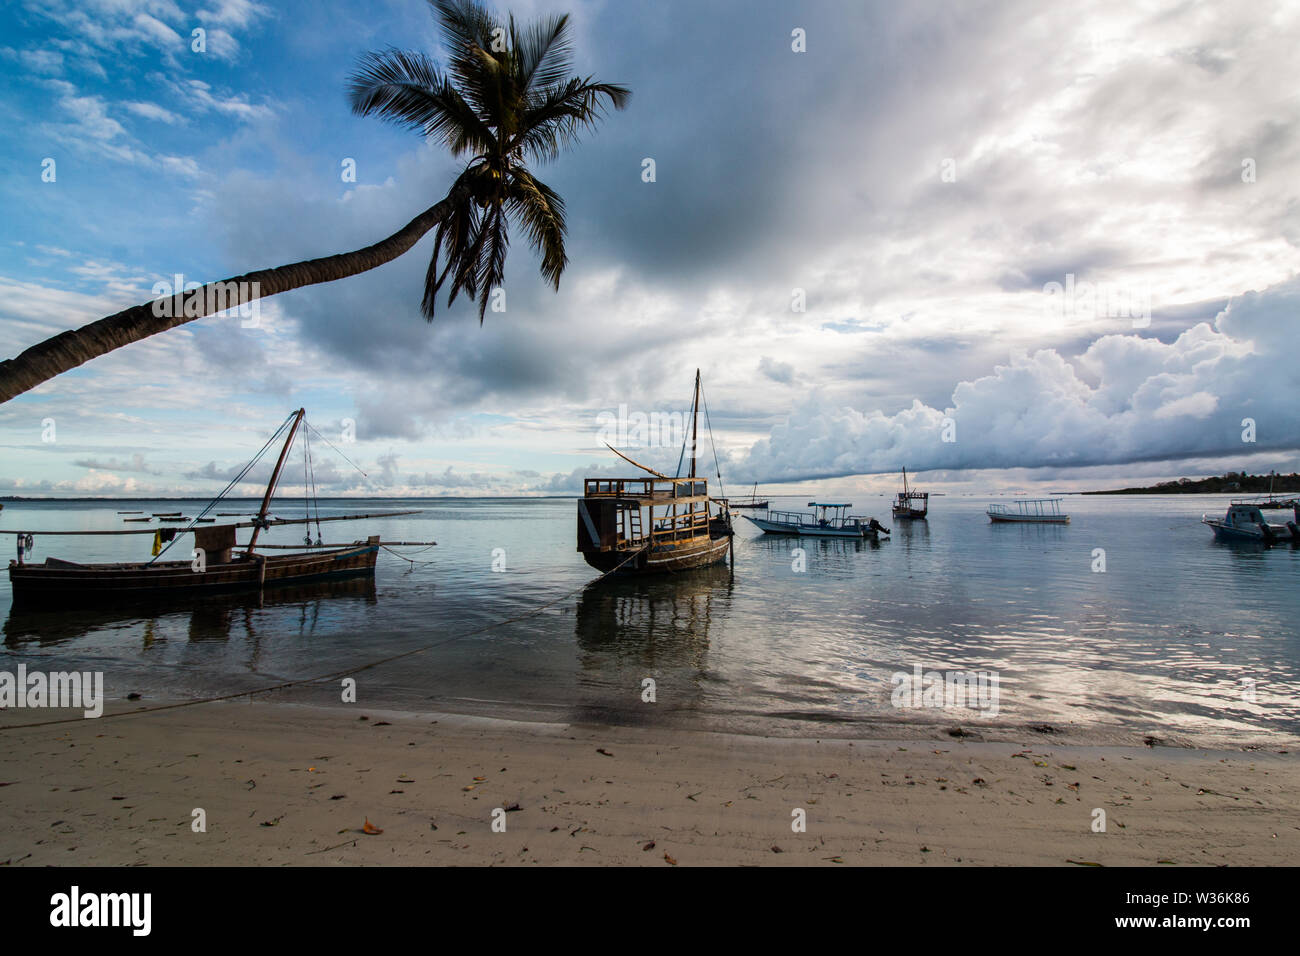 Les petits voiliers en bois, sur l'eau à la plage au lever du soleil à l'île de Mafia, la Tanzanie, avec ciel nuageux et calme avec de l'eau entourant les pirogues. Banque D'Images